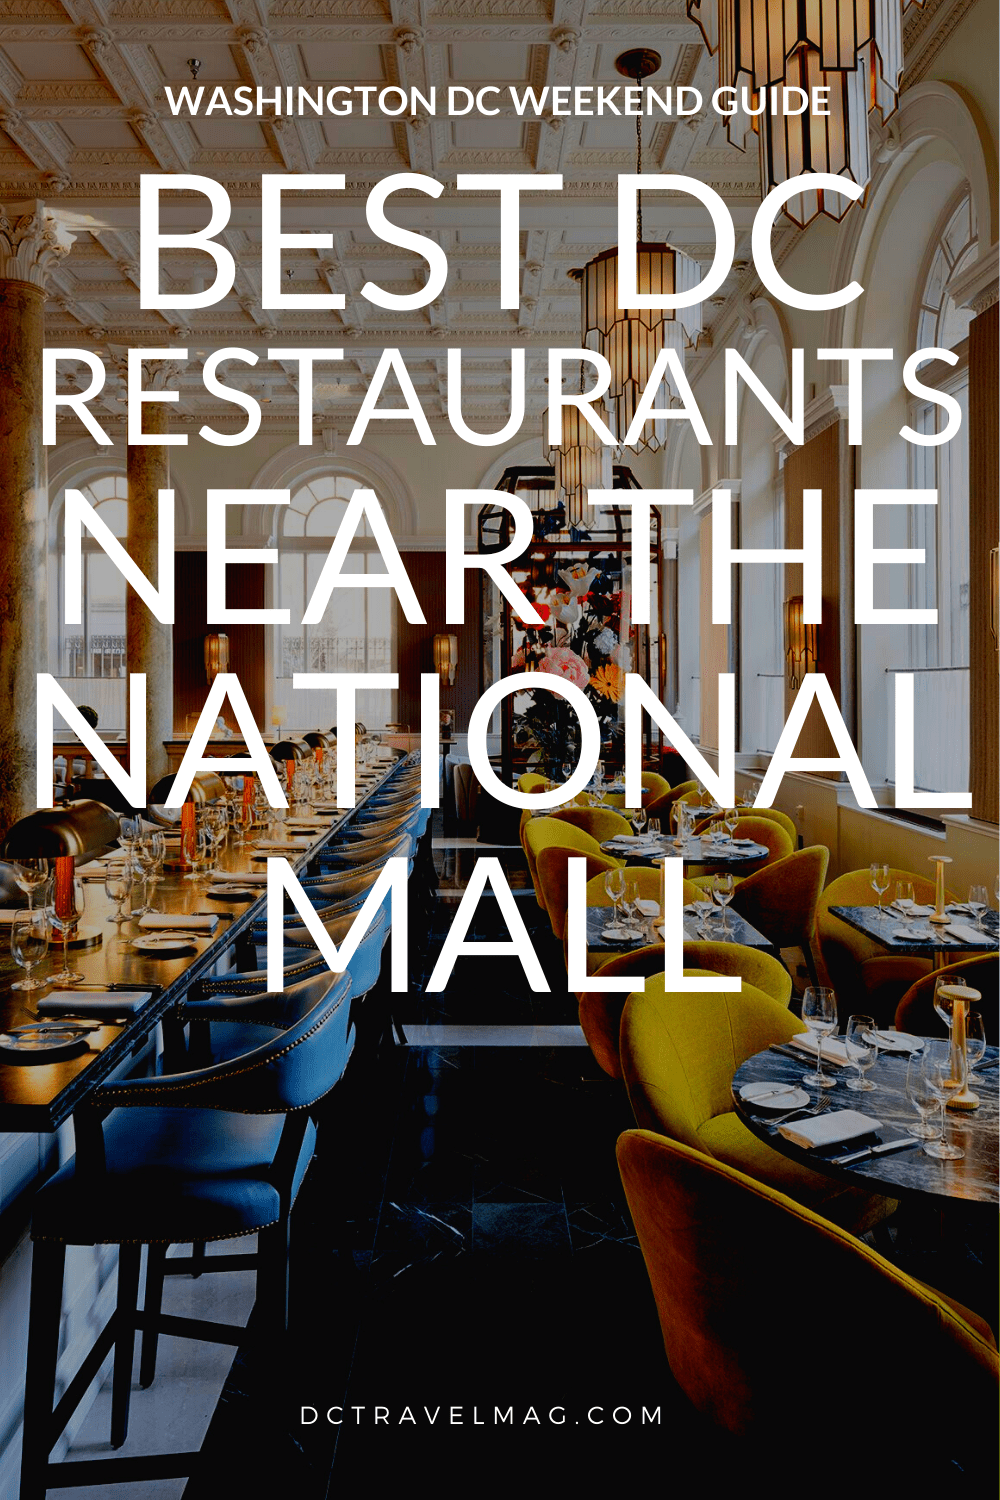 Restaurants near the National Mall in Washington DC